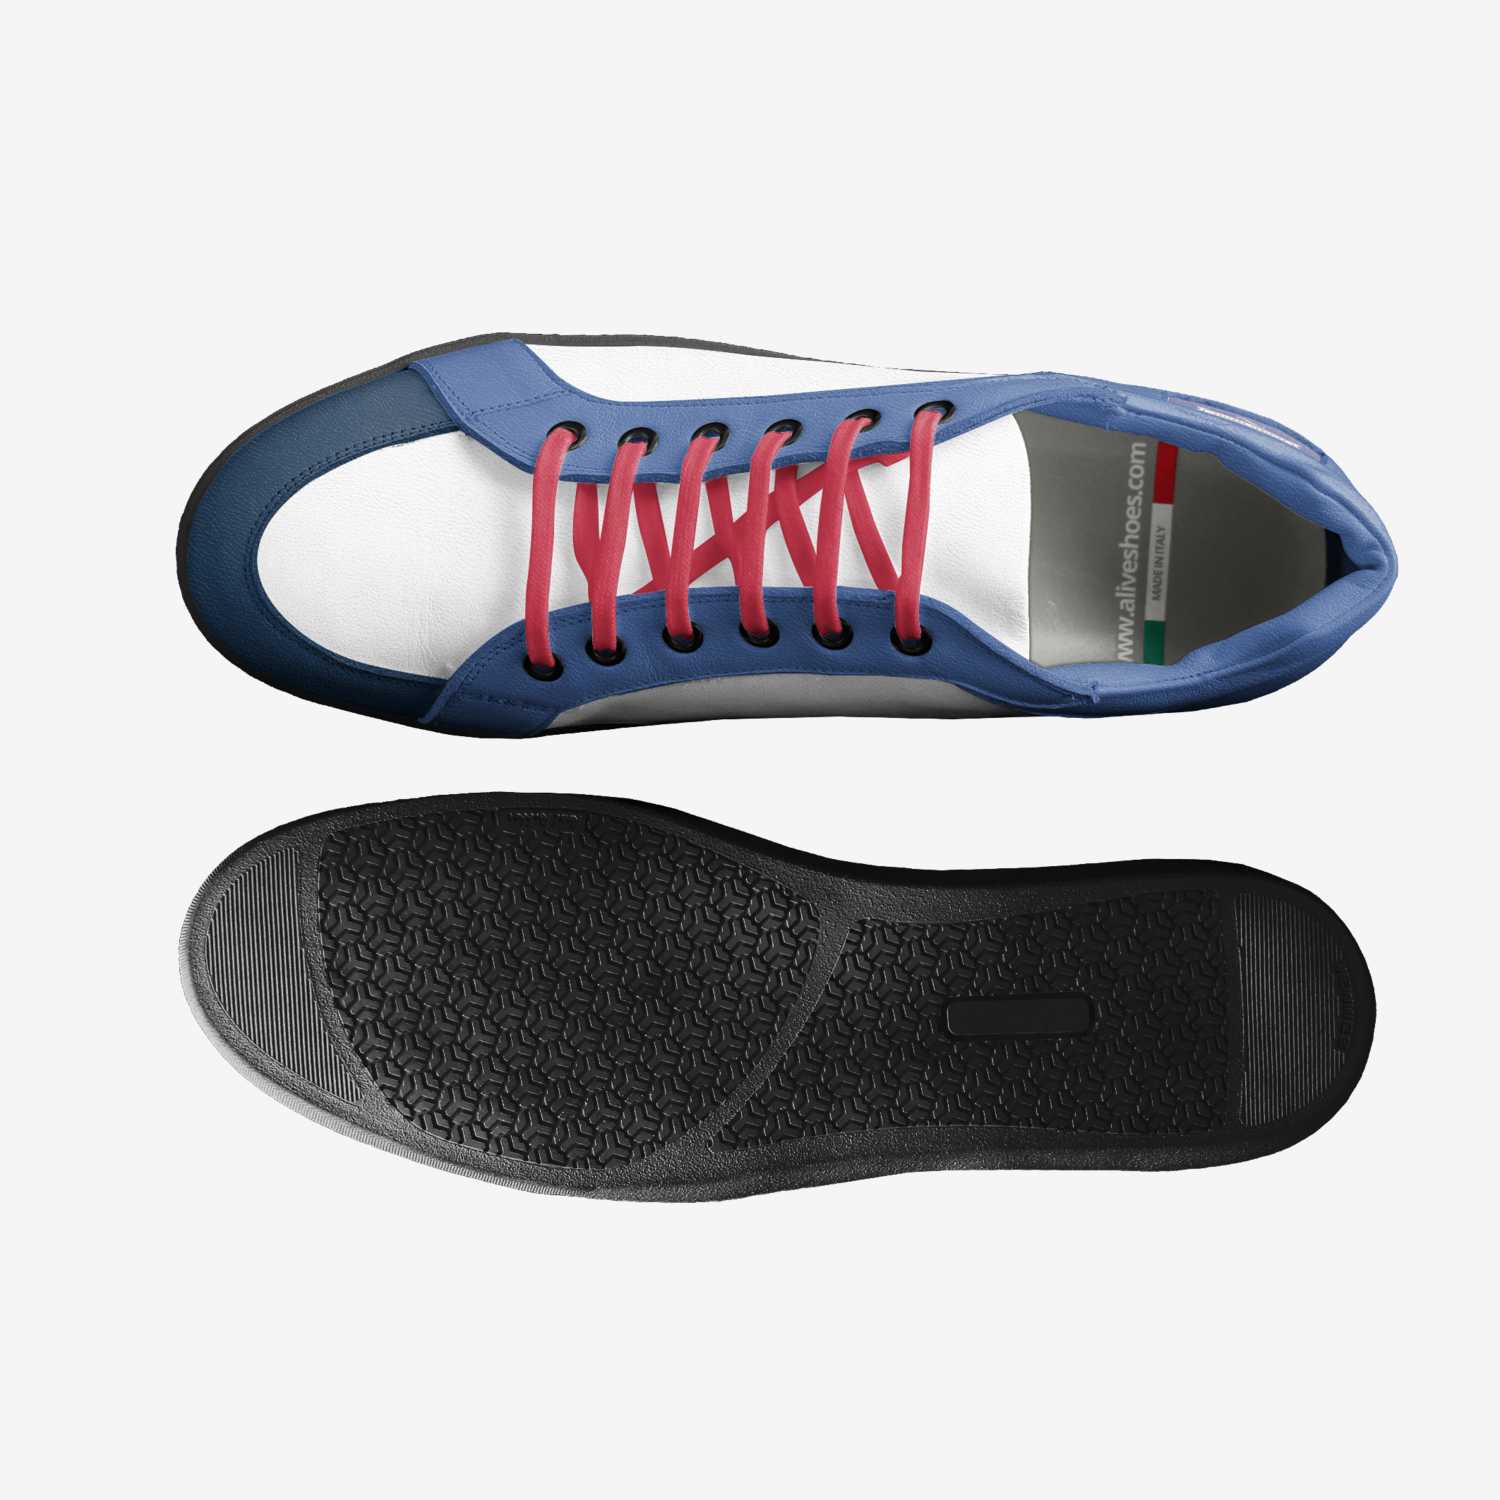 Idek | A Custom Shoe concept by Matthew Martello